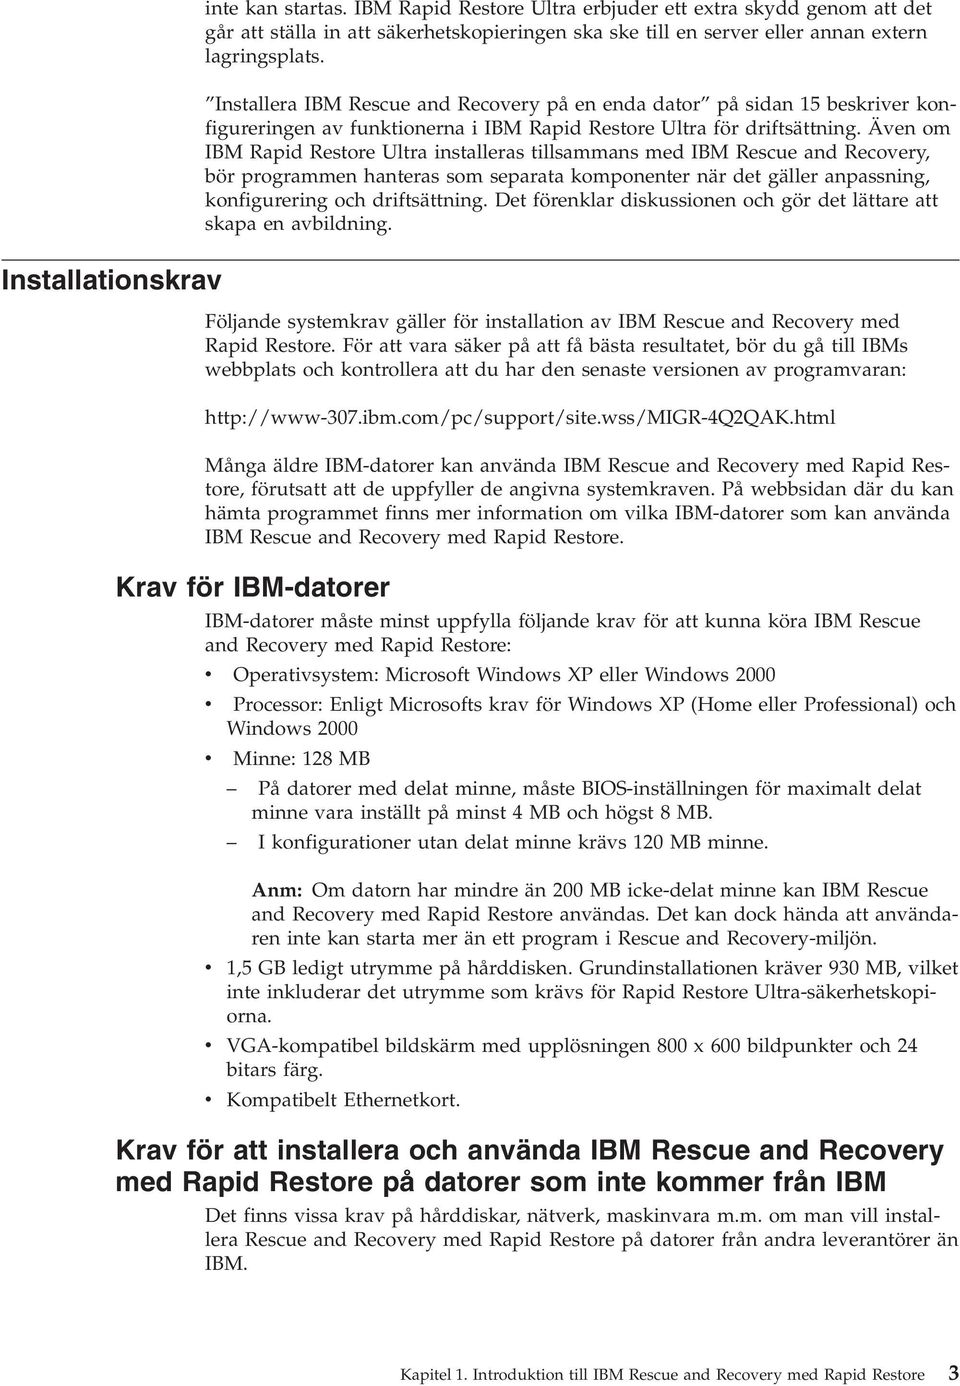 Äen om IBM Rapid Restore Ultra installeras tillsammans med IBM Rescue and Recoery, bör programmen hanteras som separata komponenter när det gäller anpassning, konfigurering och driftsättning.